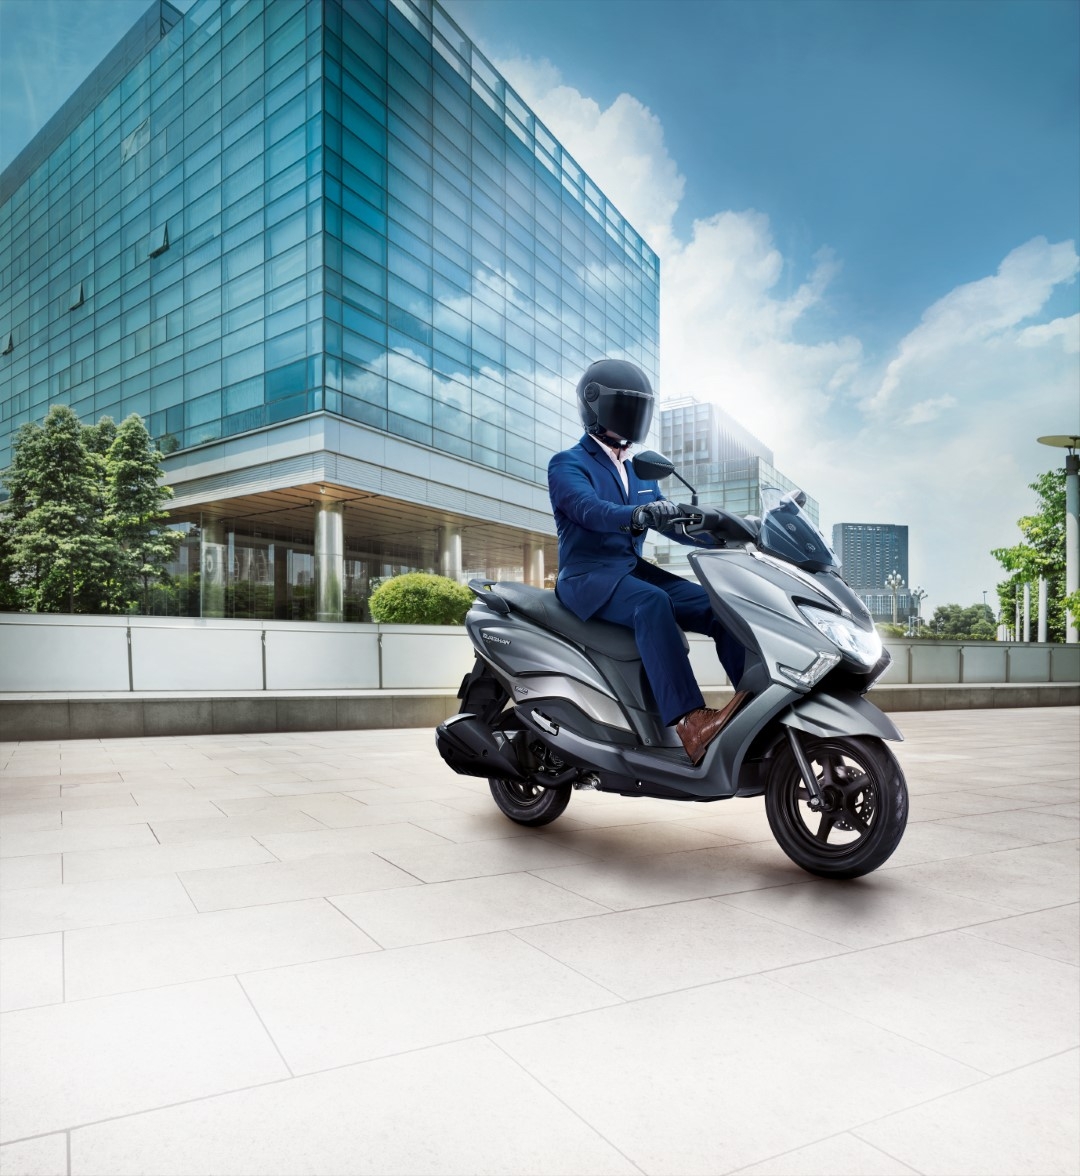 Suzuki Burgman Street 125 ra mắt khách hàng Việt với giá 49,5 triệu đồng